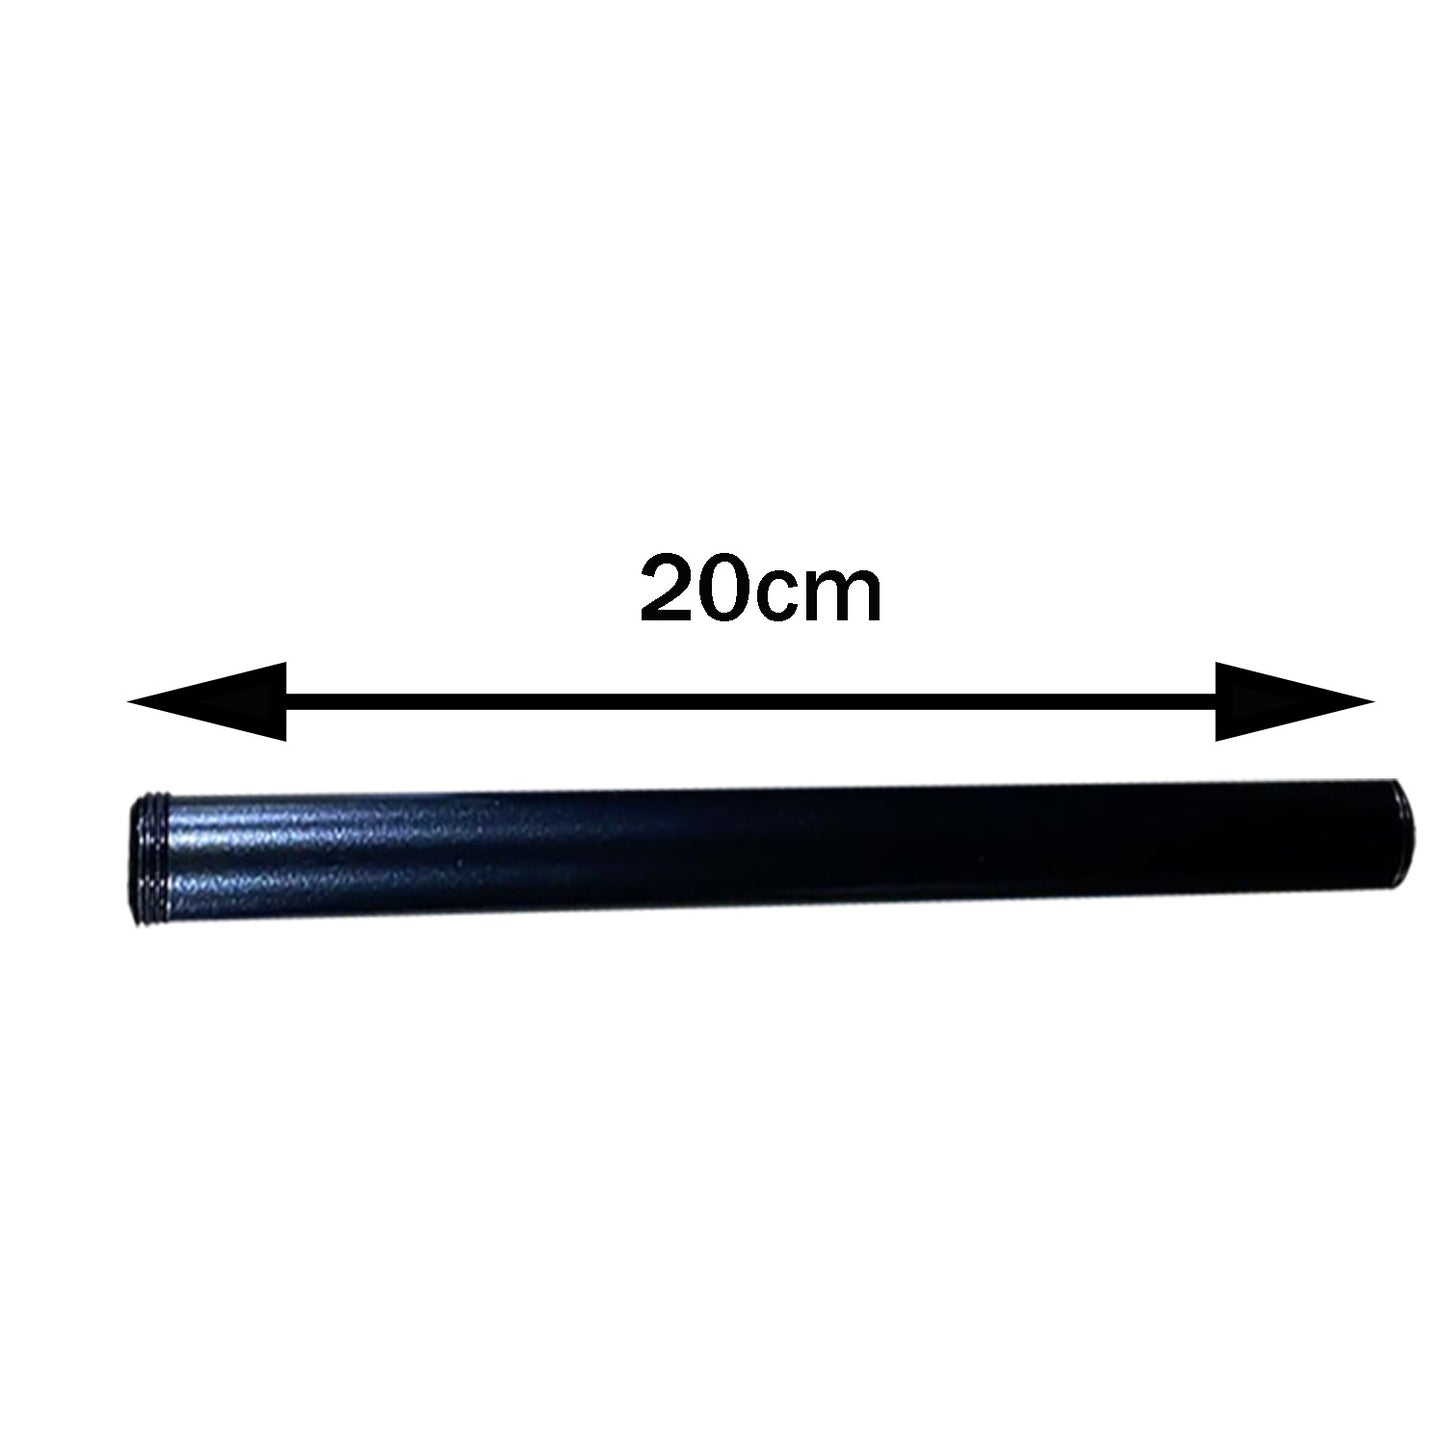 Rohrbeleuchtungszubehör Schwarzes Eisengewinderohr-20cm